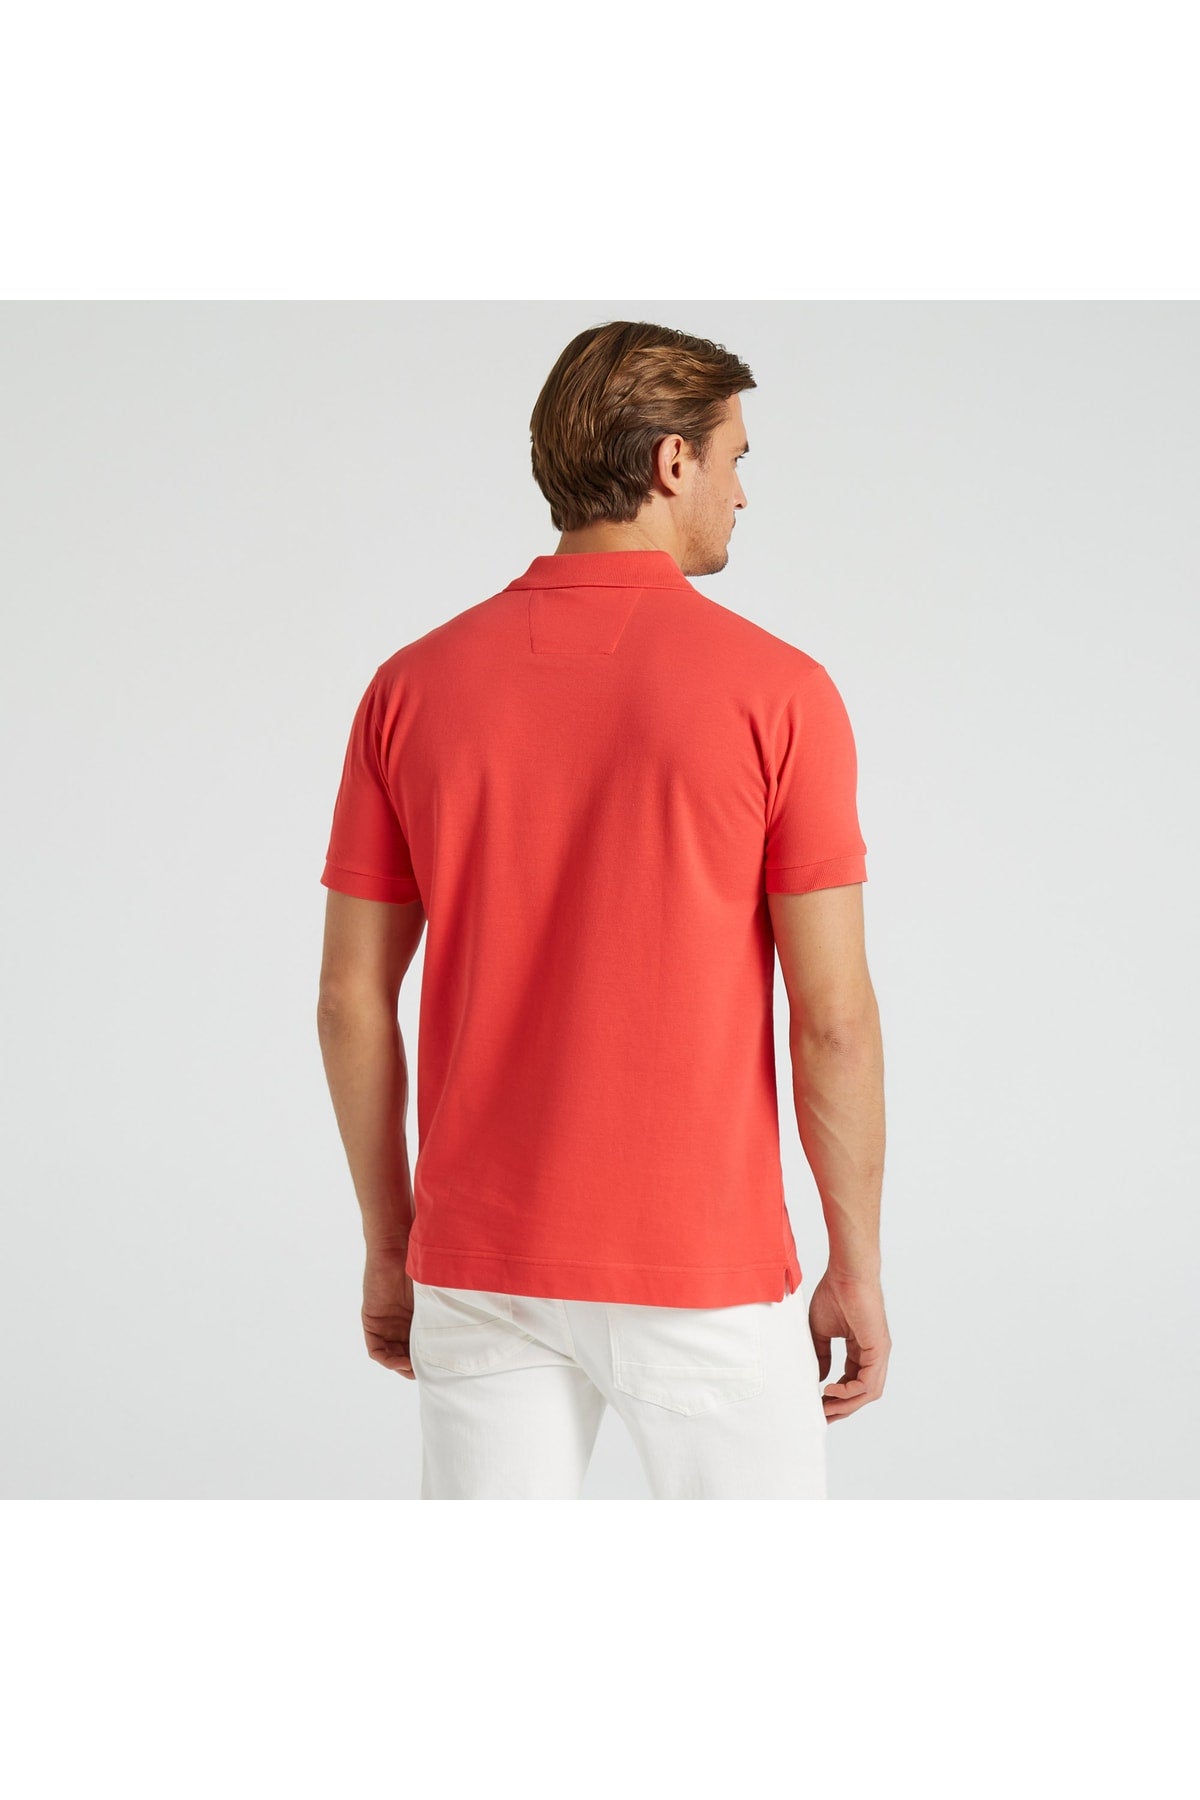  Мужская красная рубашка-поло классического кроя с коротким рукавом